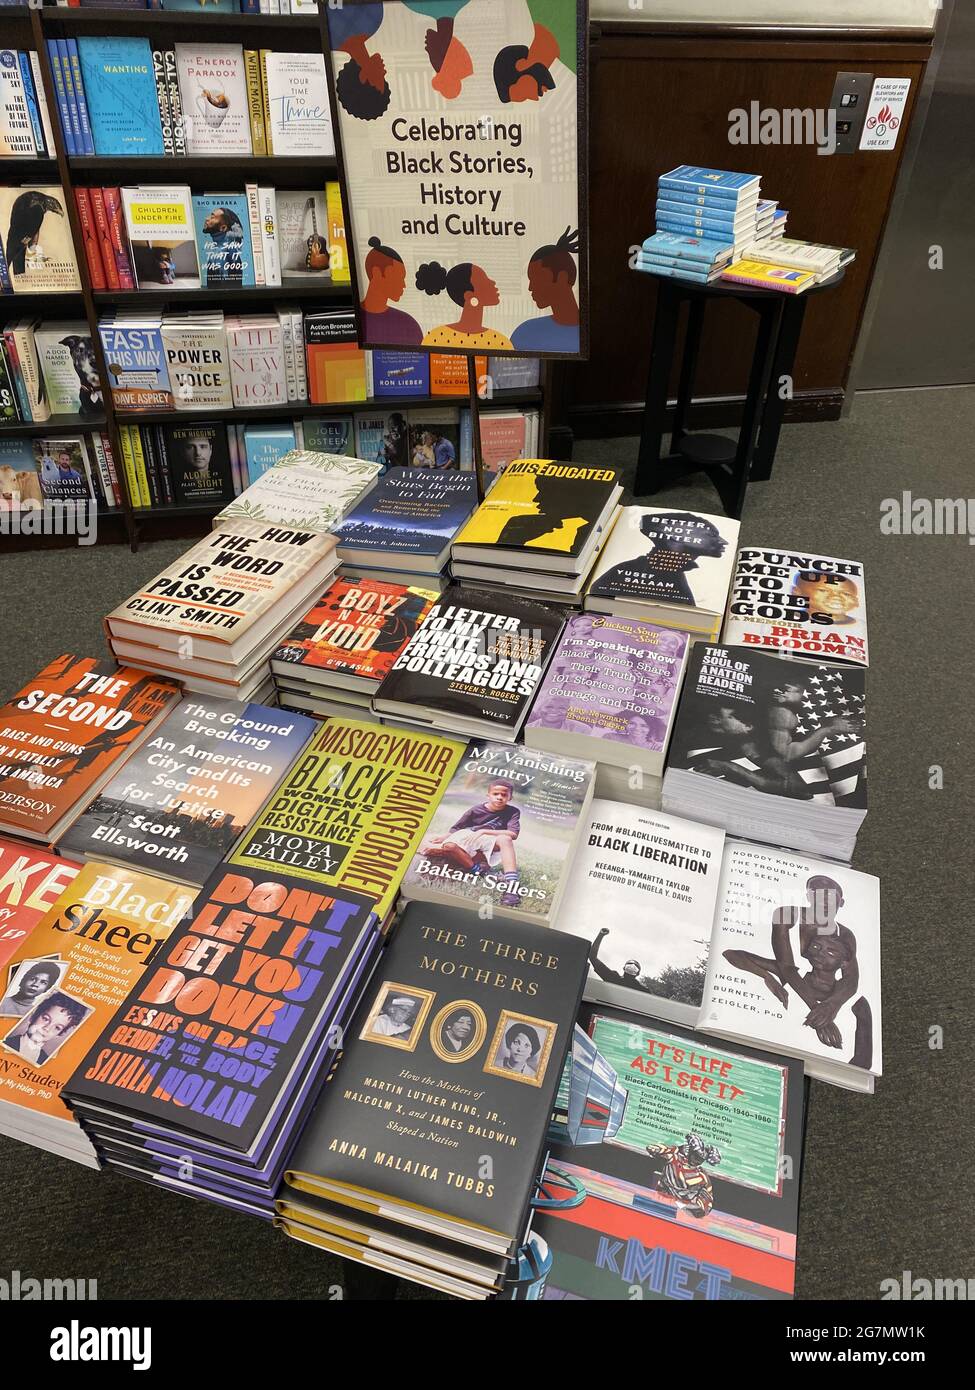 Ausstellung von Büchern zum Verkauf, die die Geschichte und Kultur der Schwarzen rund um den nationalen Feiertag der Juneteenth in den Vereinigten Staaten feiern. Buchhandlung, Brooklyn, NY. Stockfoto